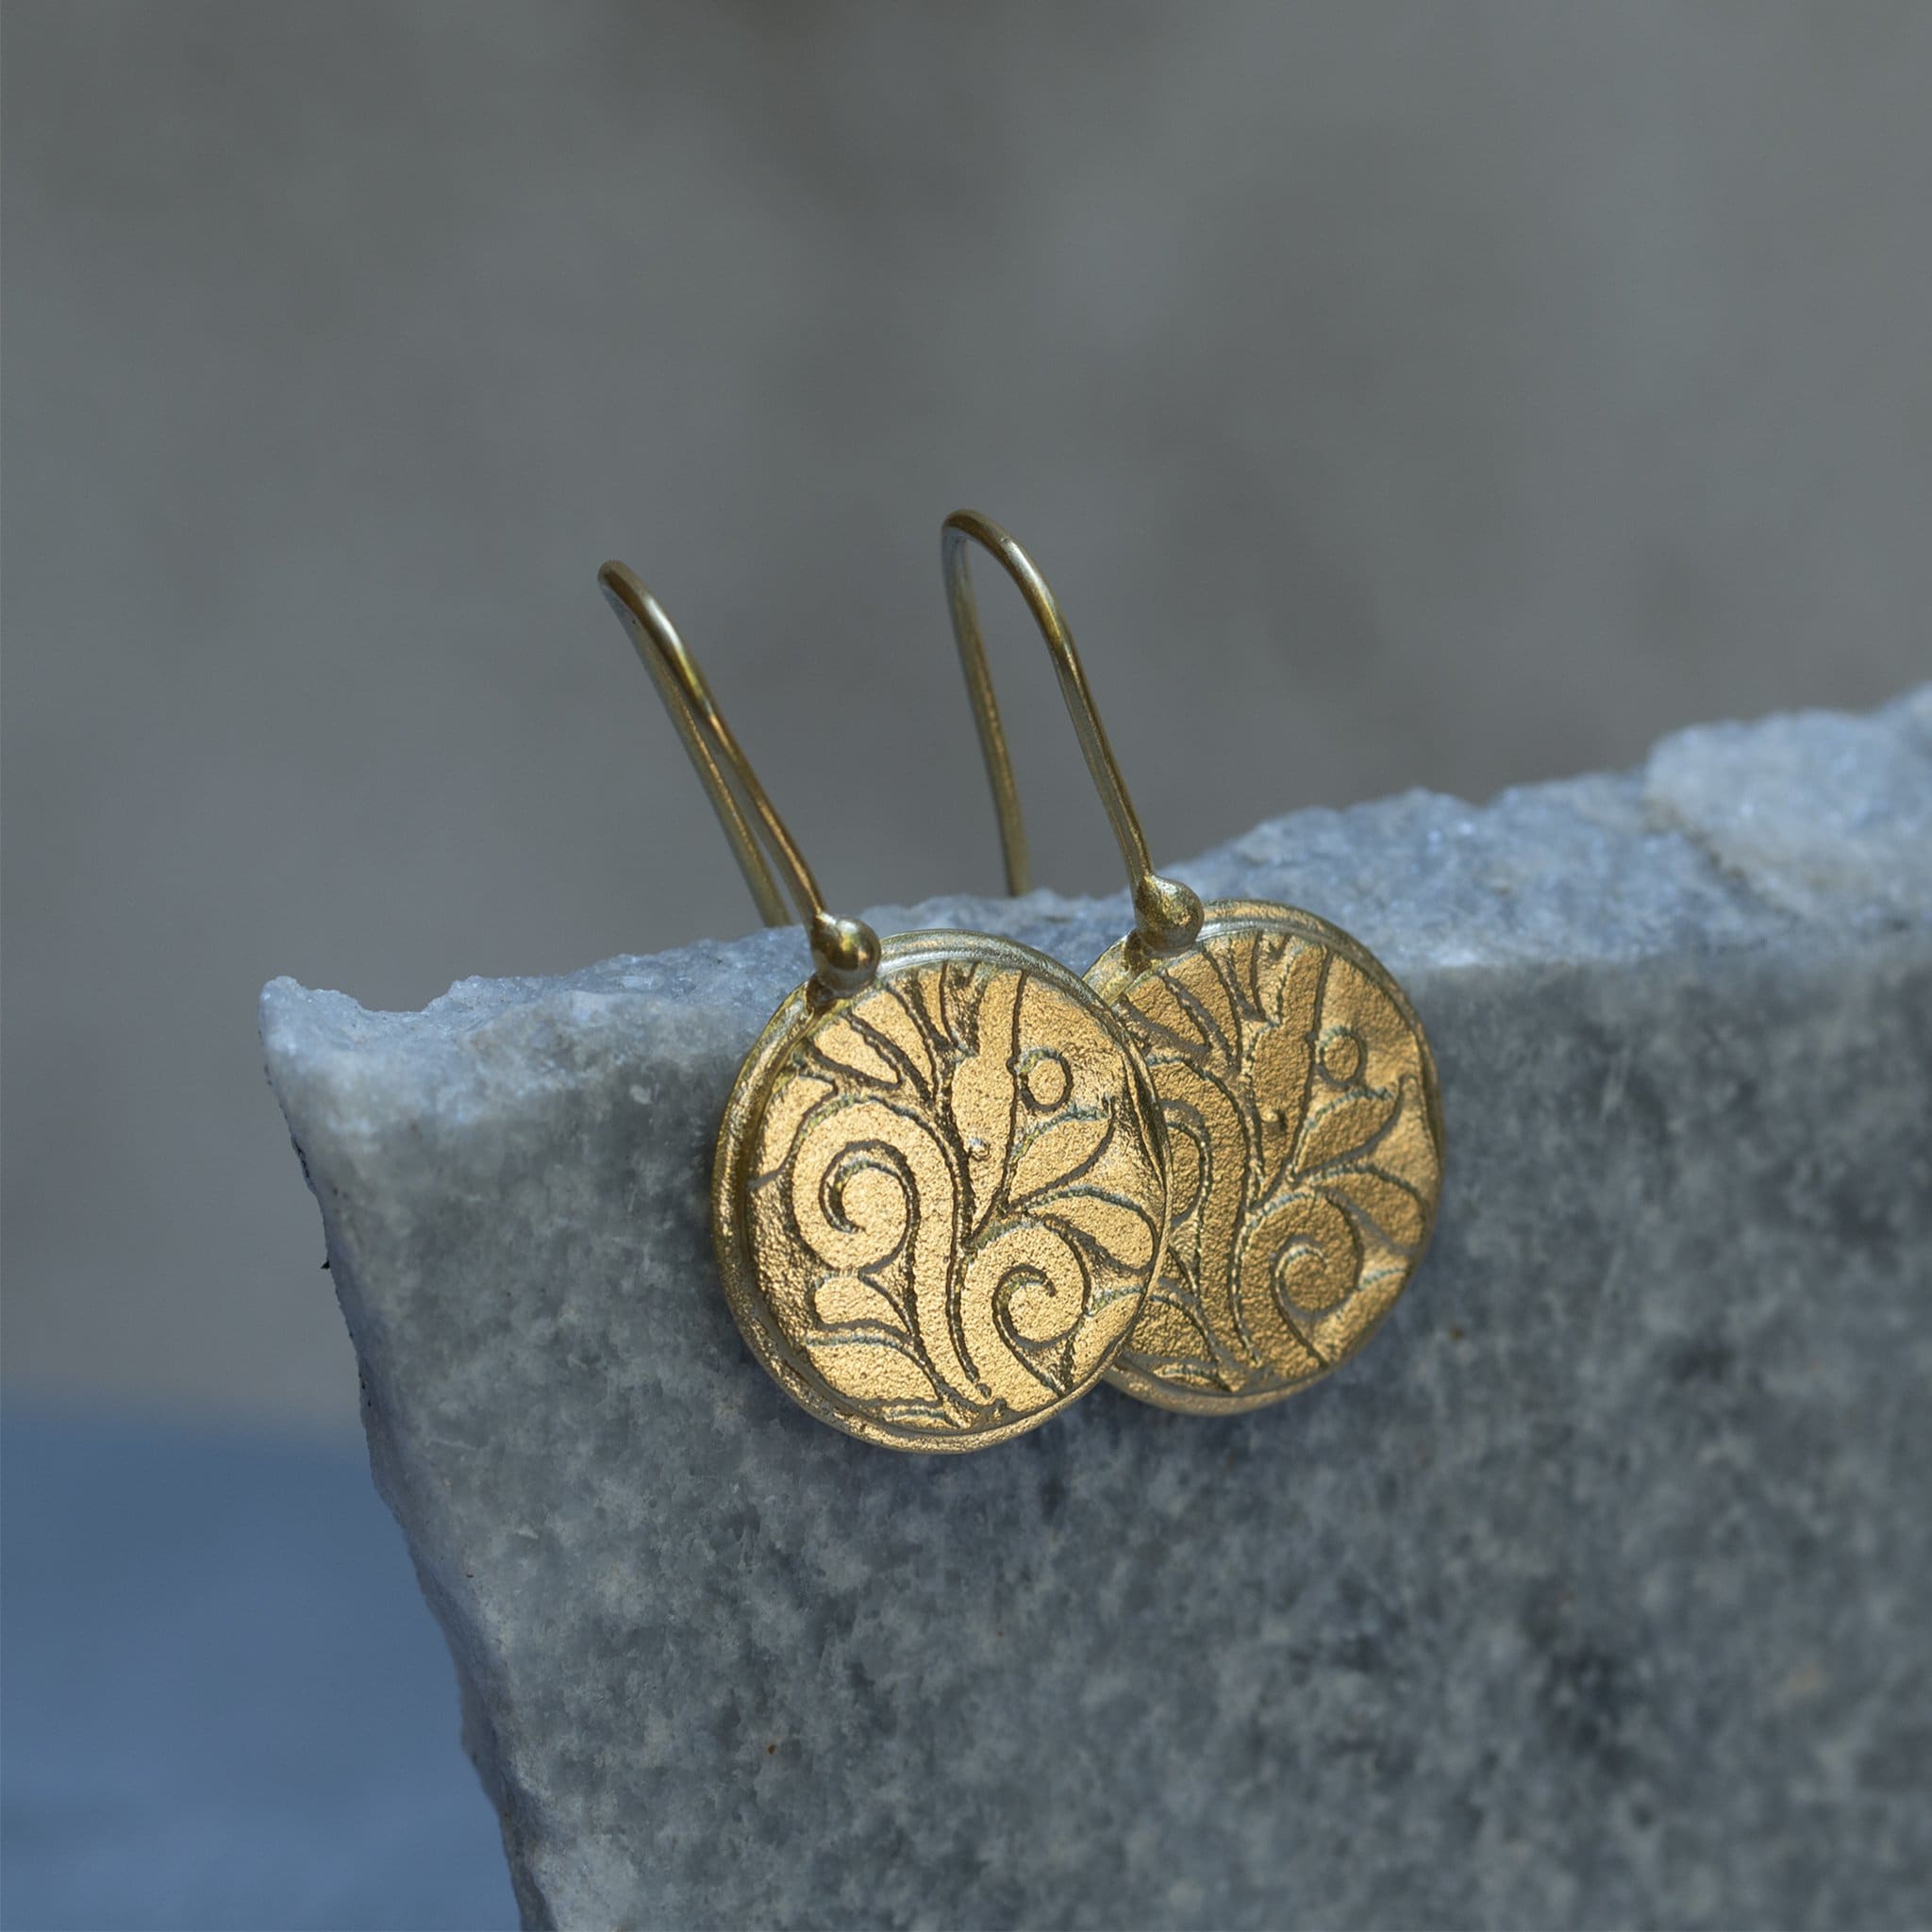 The Flower-Gold Dangling Flower Earrings For Women